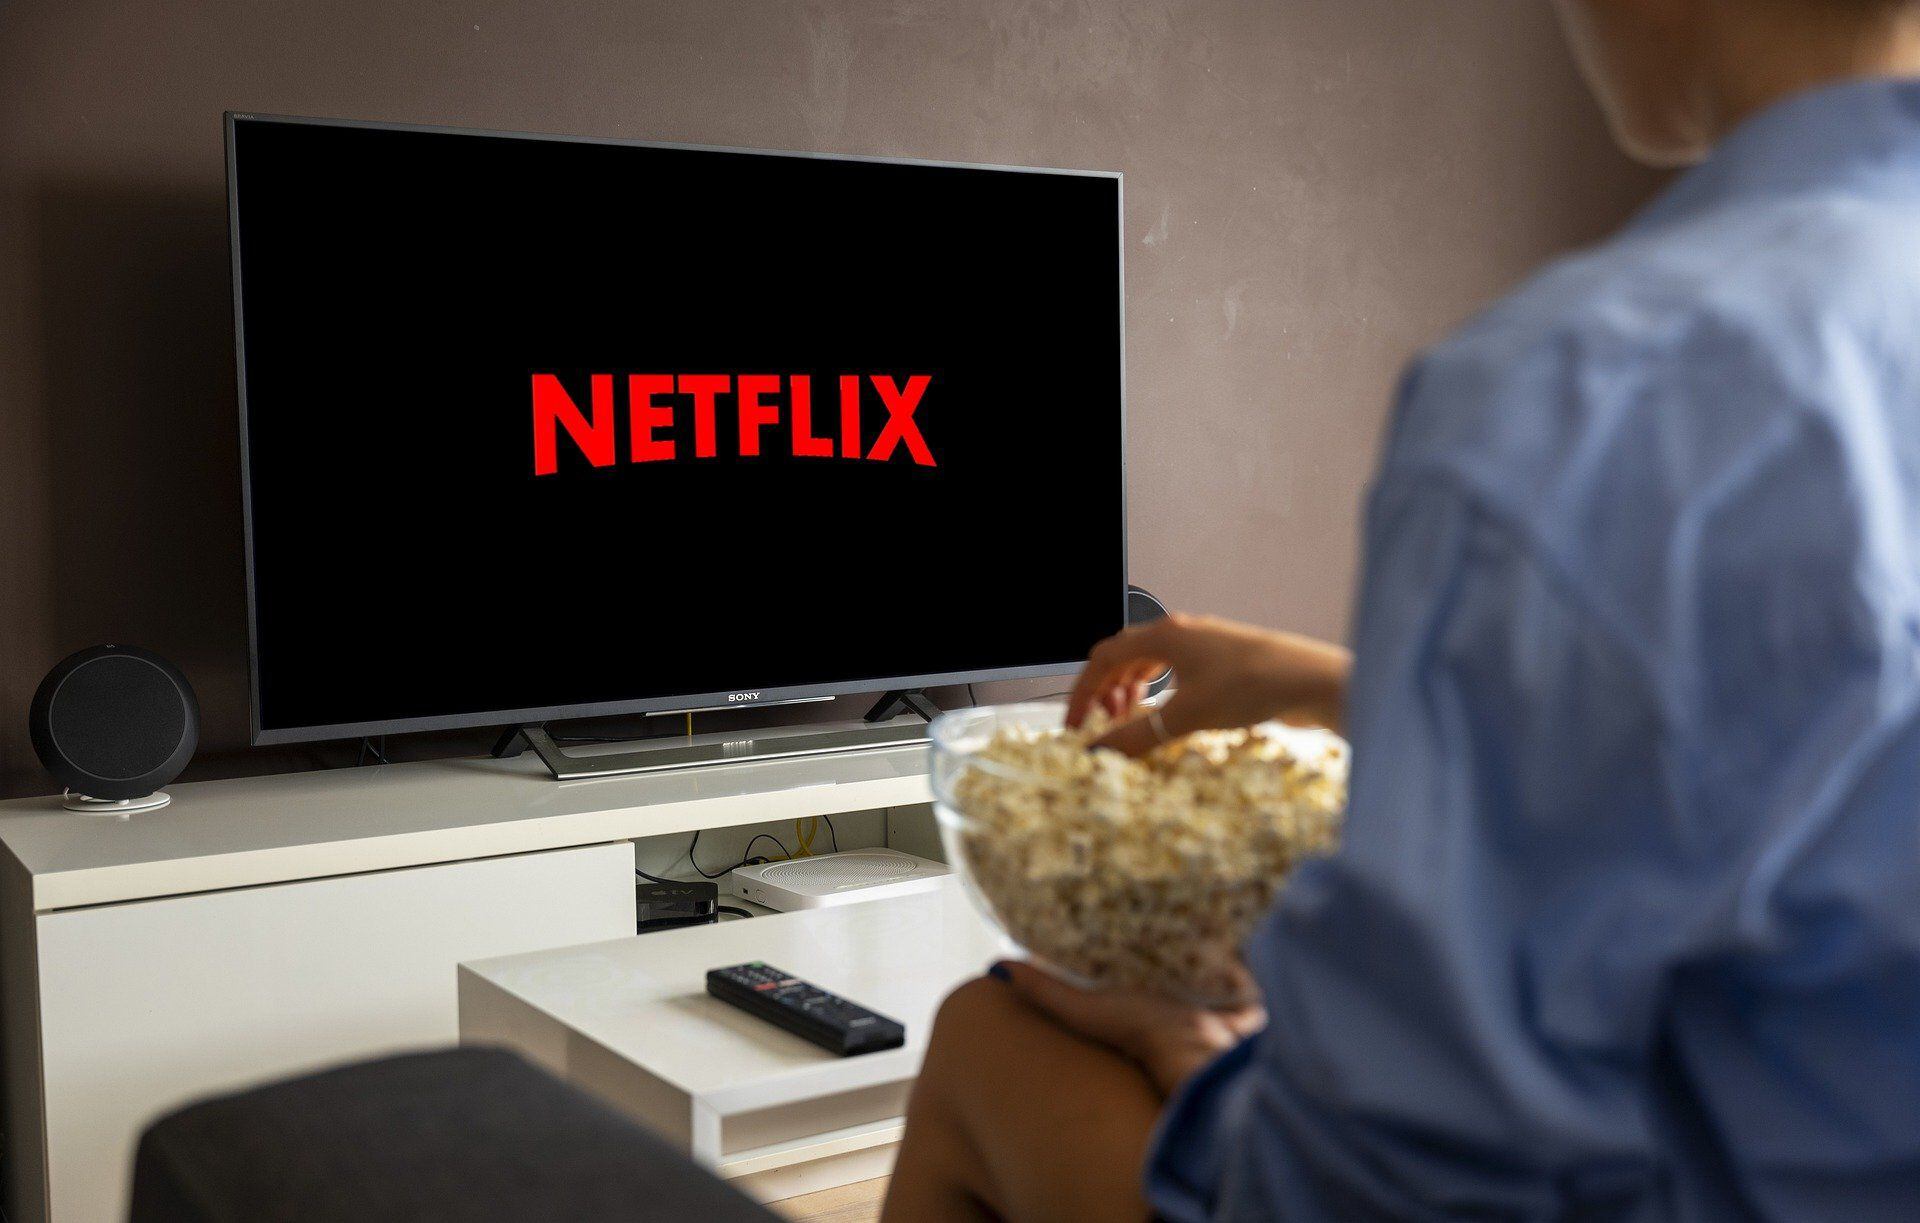 Por sus series y películas, Netflix se ha convertido en una de las plataformas más fuertes en la guerra del streaming. (Pixabay)